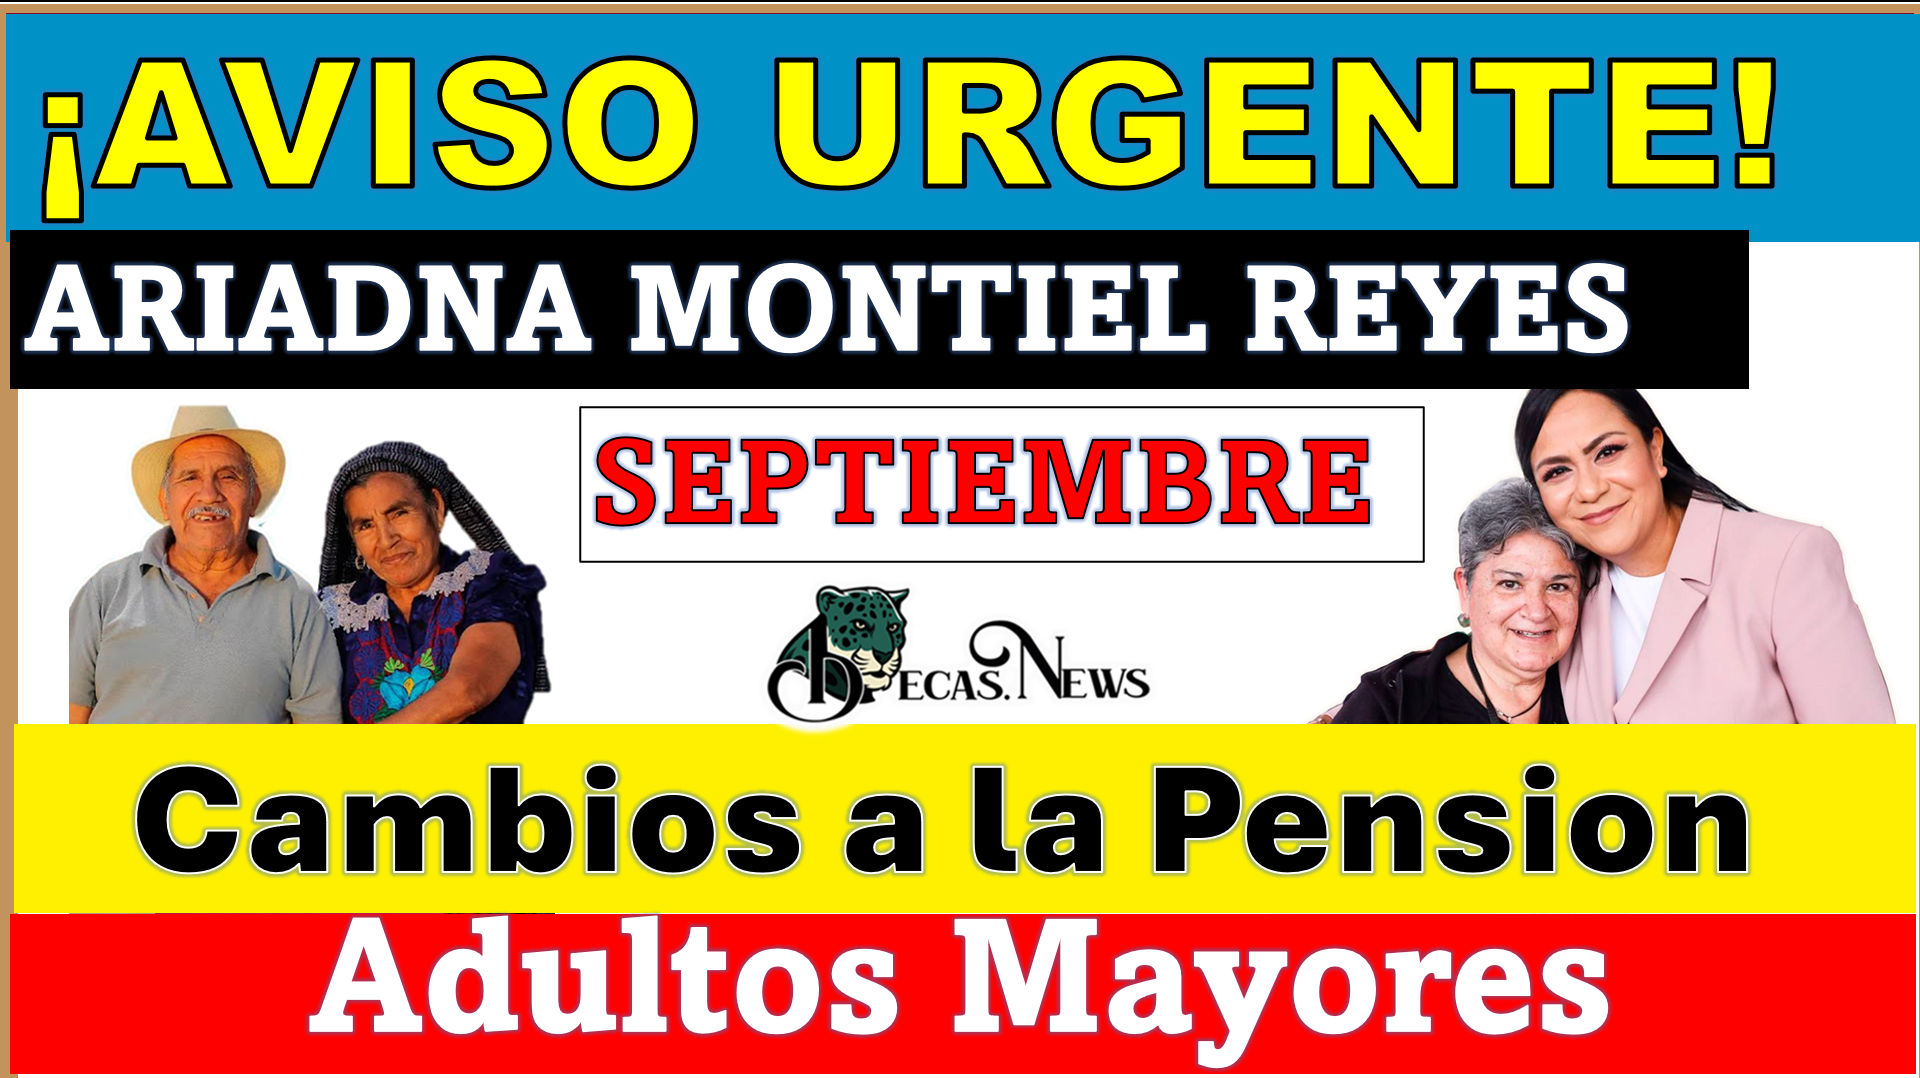 ¡AVISO URGENTE de Ariadna Montiel Reyes! Importantes cambios a la Pensión para Adultos Mayores